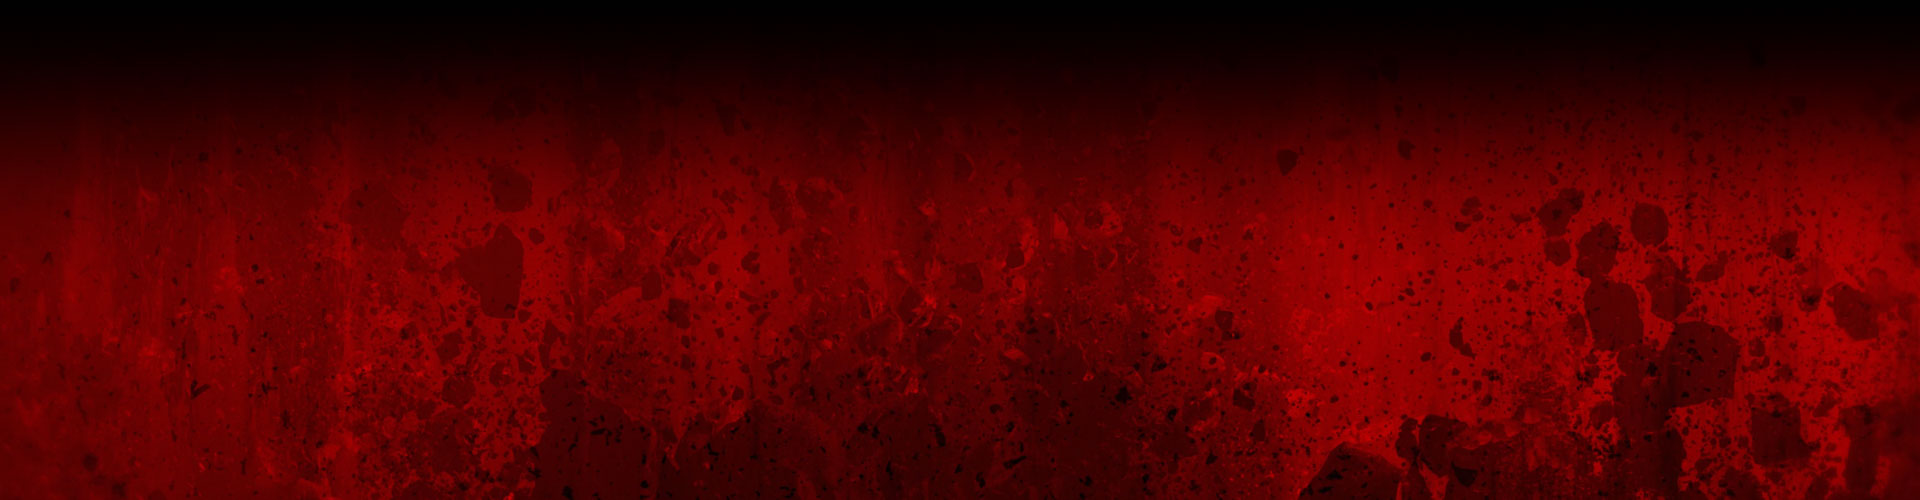 Un muro de rojo cubierto de salpicaduras oscuras e imágenes de piedras destruidas.